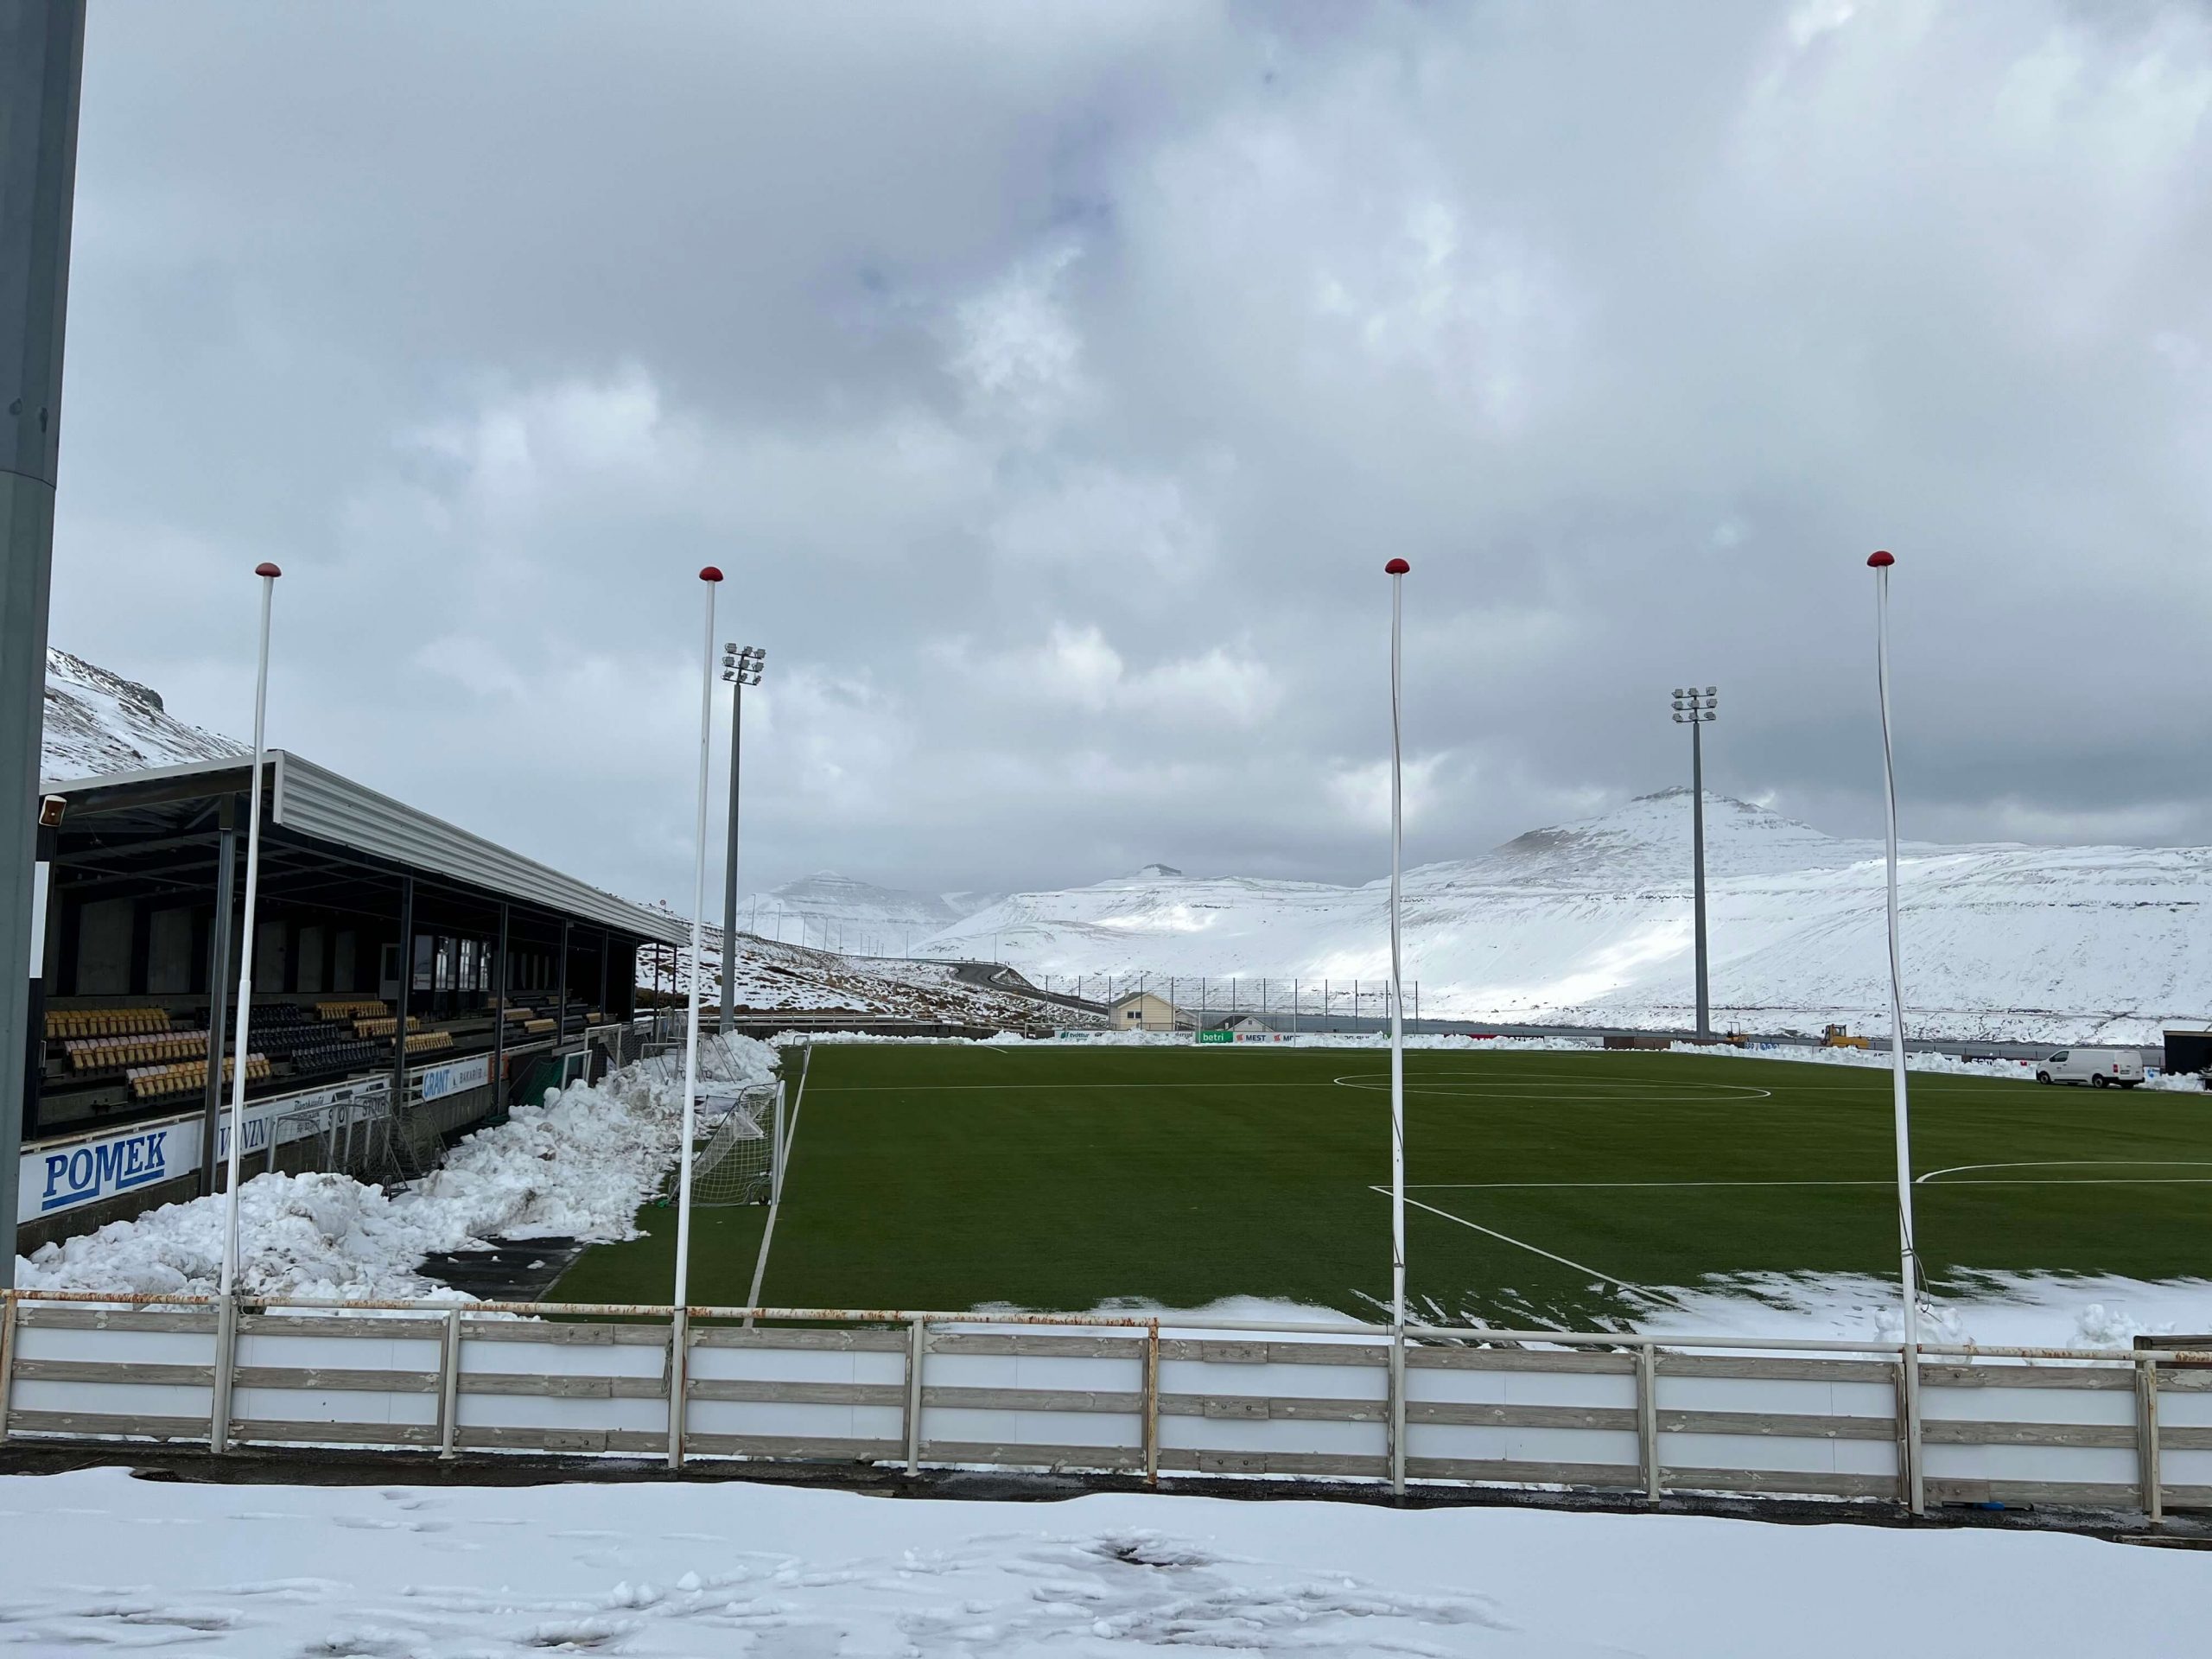 Skála Stadium in the Faroe Islands, home to Skála ÍF.